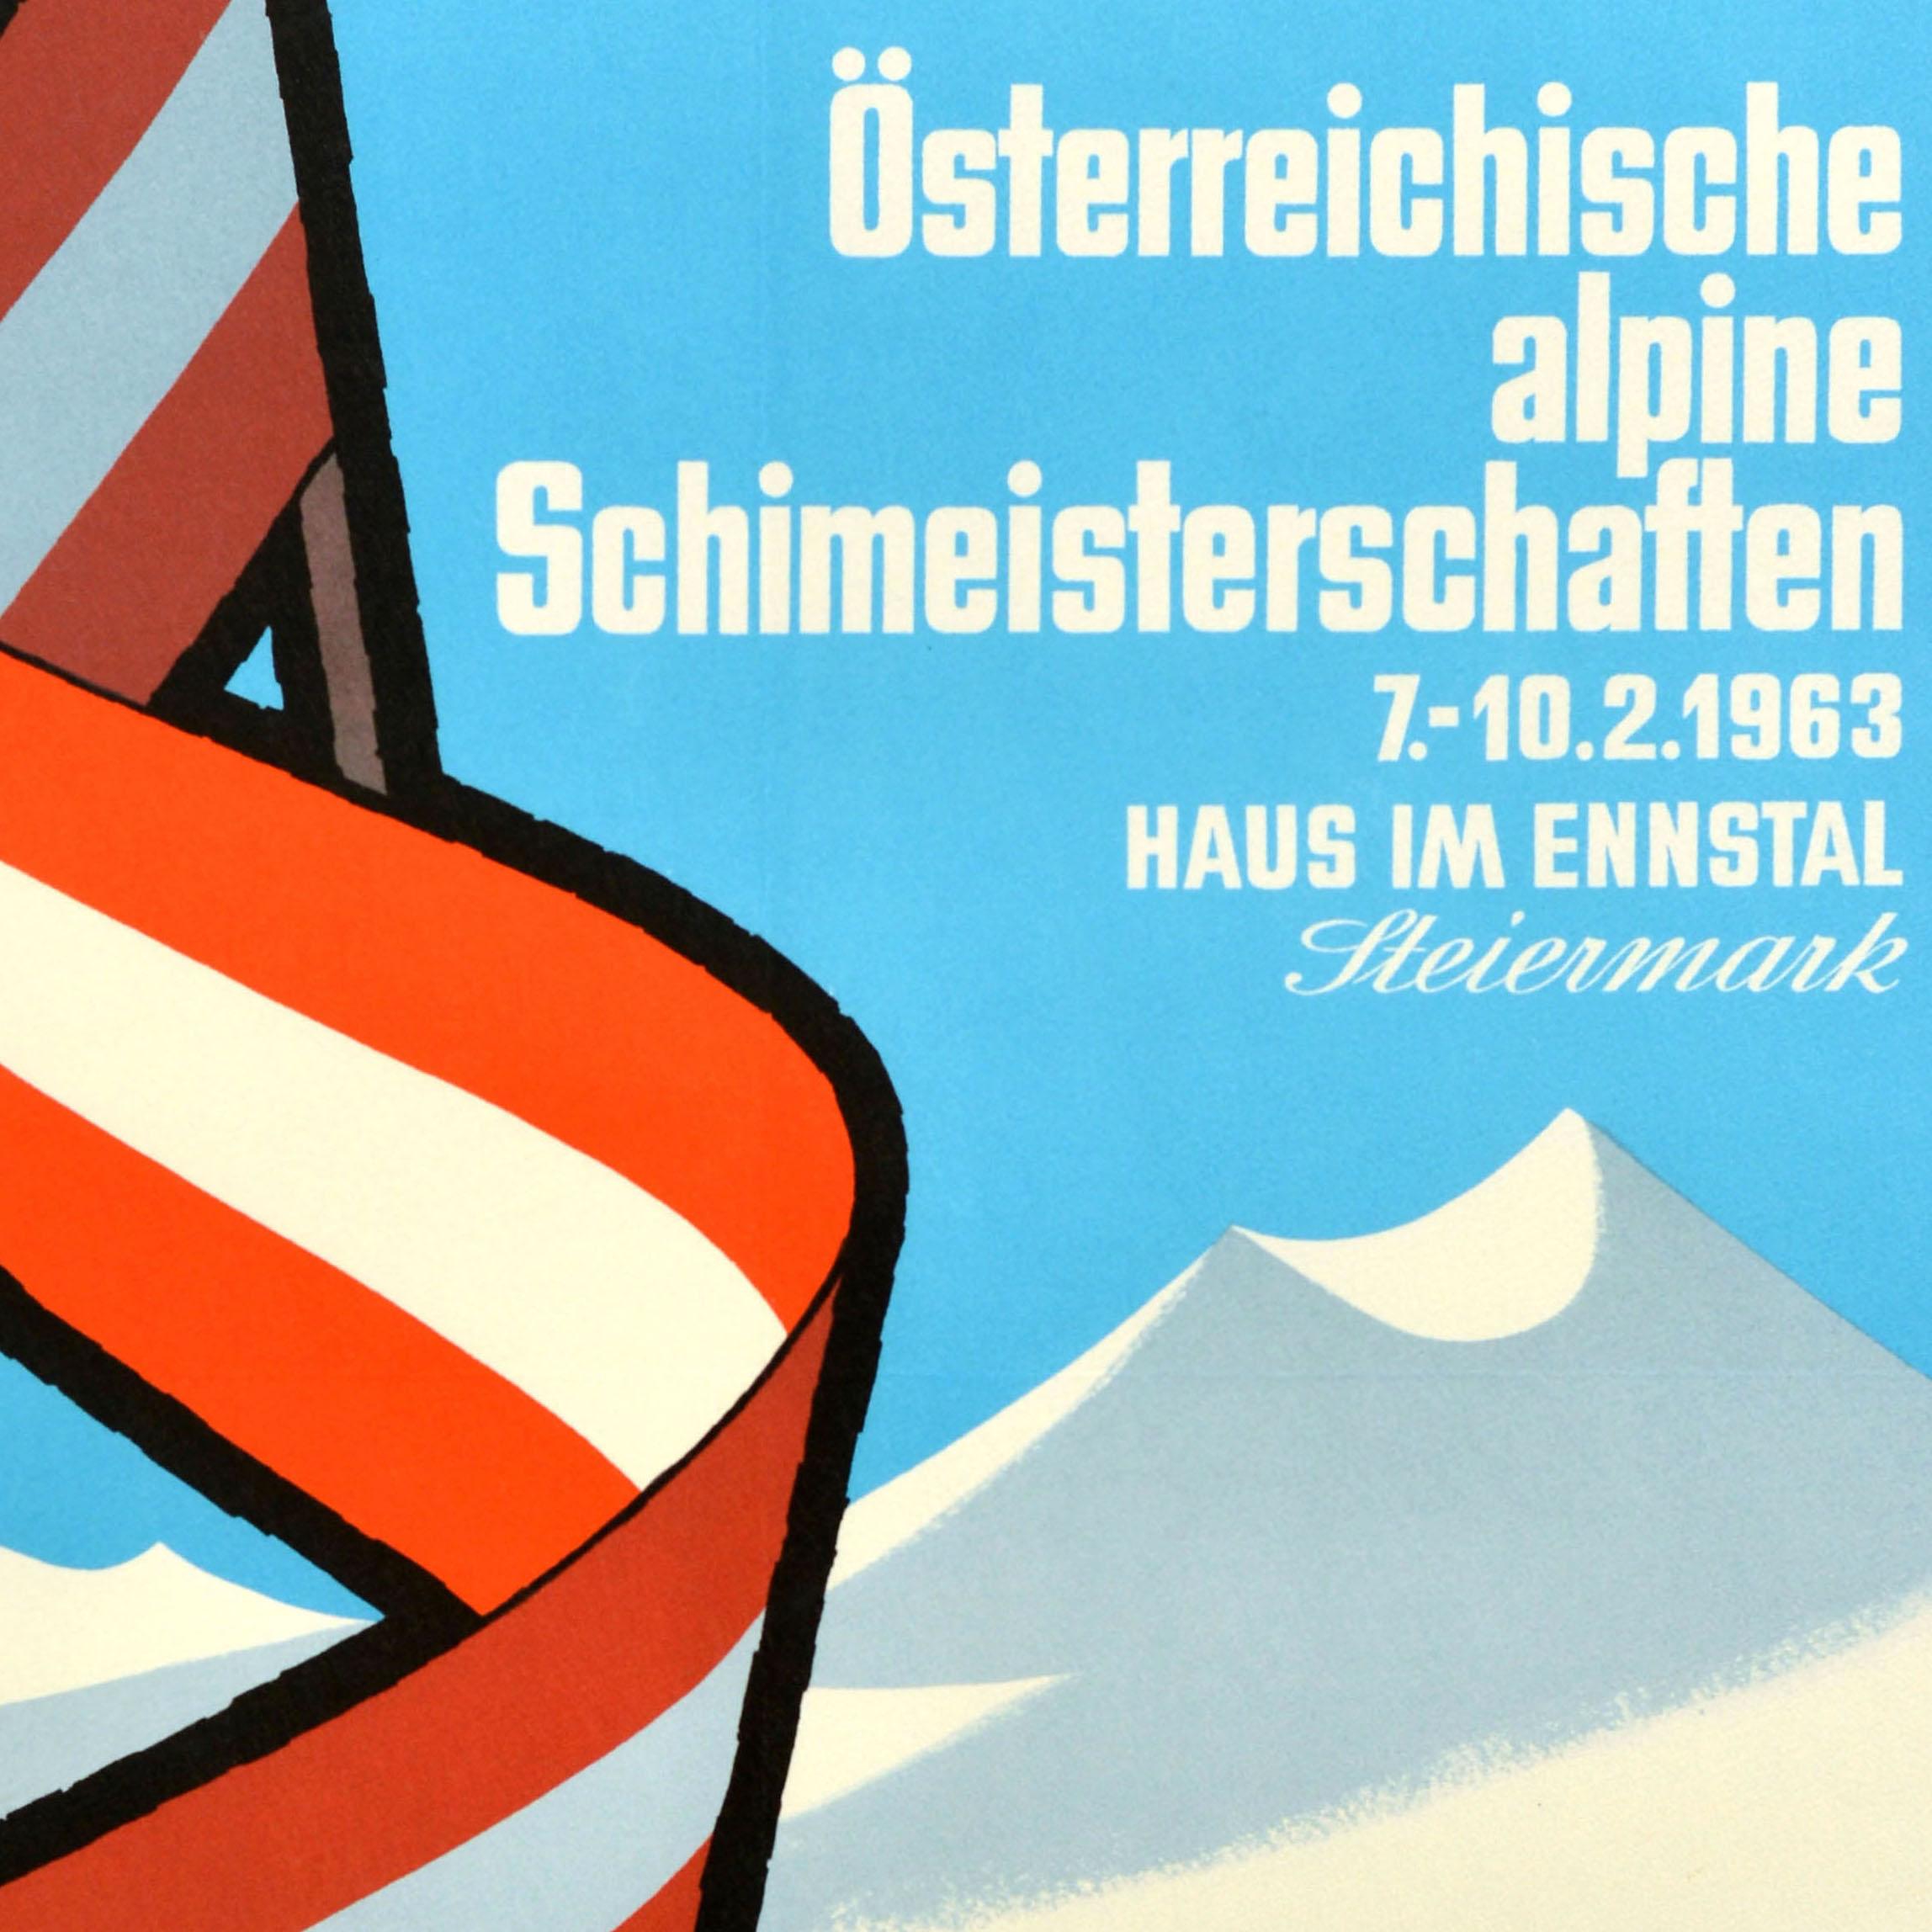 Original vintage sports poster for the Osterreichische Alpine Schimeisterschaften Haus Im Ennstal Steiermark / Austrian Alpine Ski Championships 7-10 February 1963 Styria organised by the OSV Steirischer Schiverband Sportverein Union Haus sports